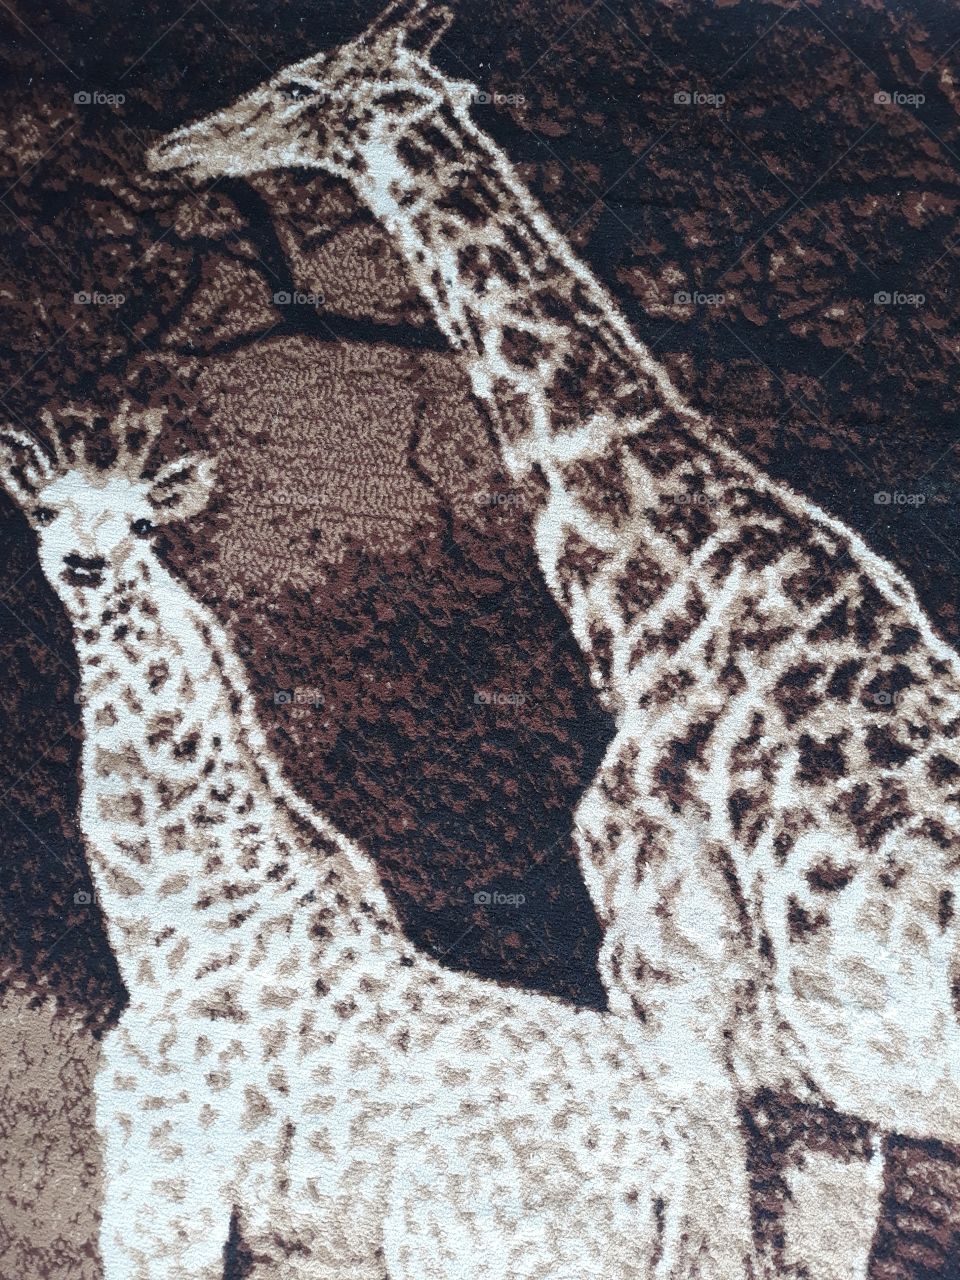 girafe at my carpet #animalpattern #carpet #cutepatern